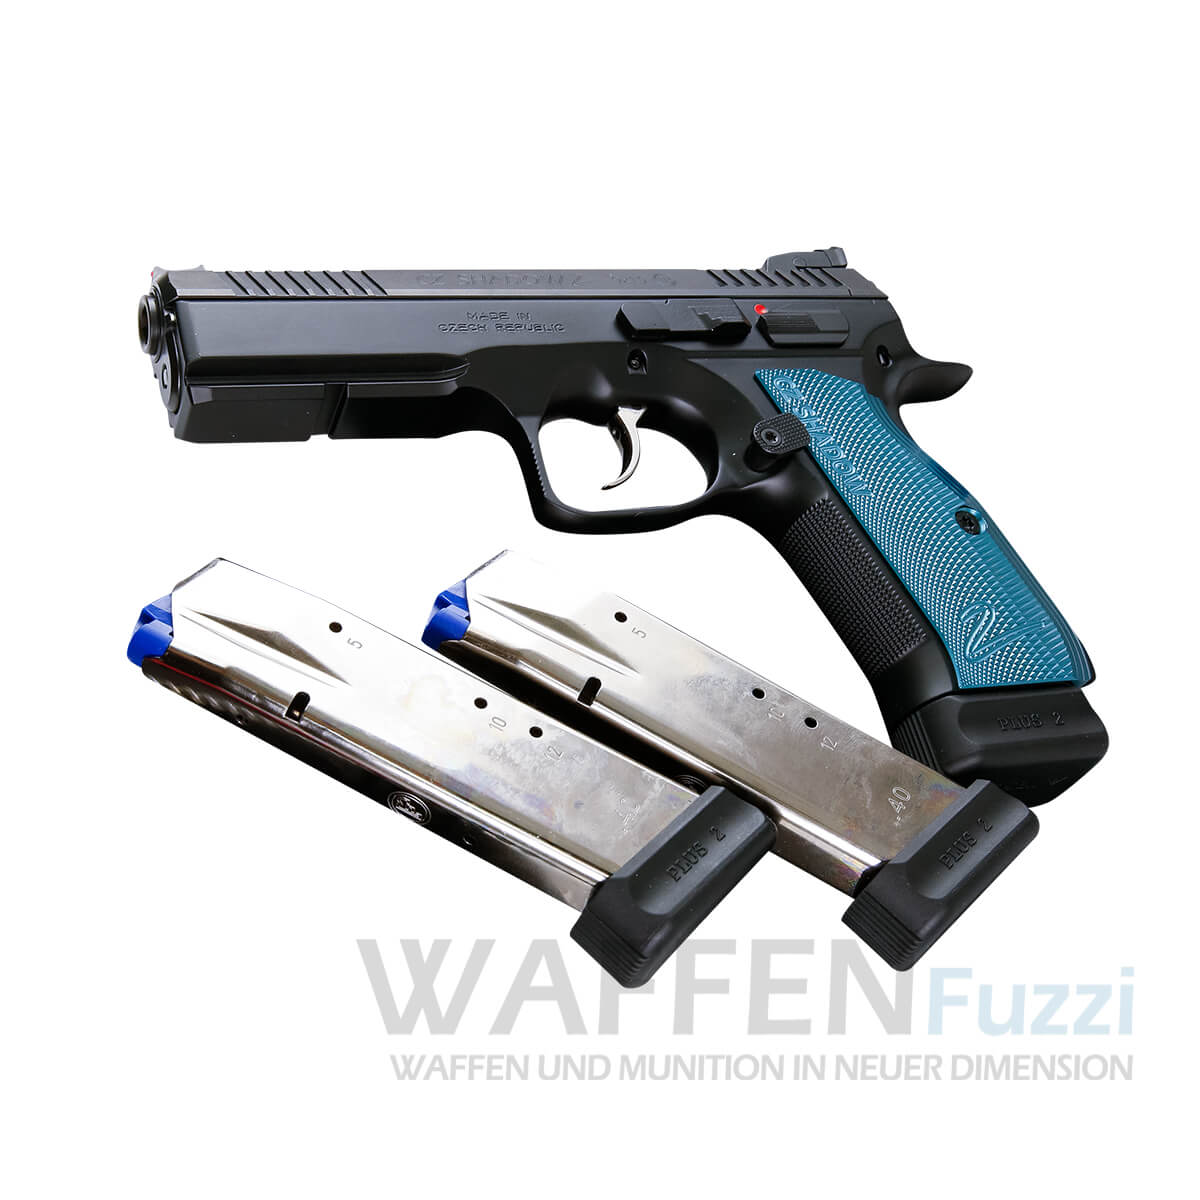 CZ 75 SP-01 Shadow II  Waffen und Munition online bei Waffenfuzzi kaufen 